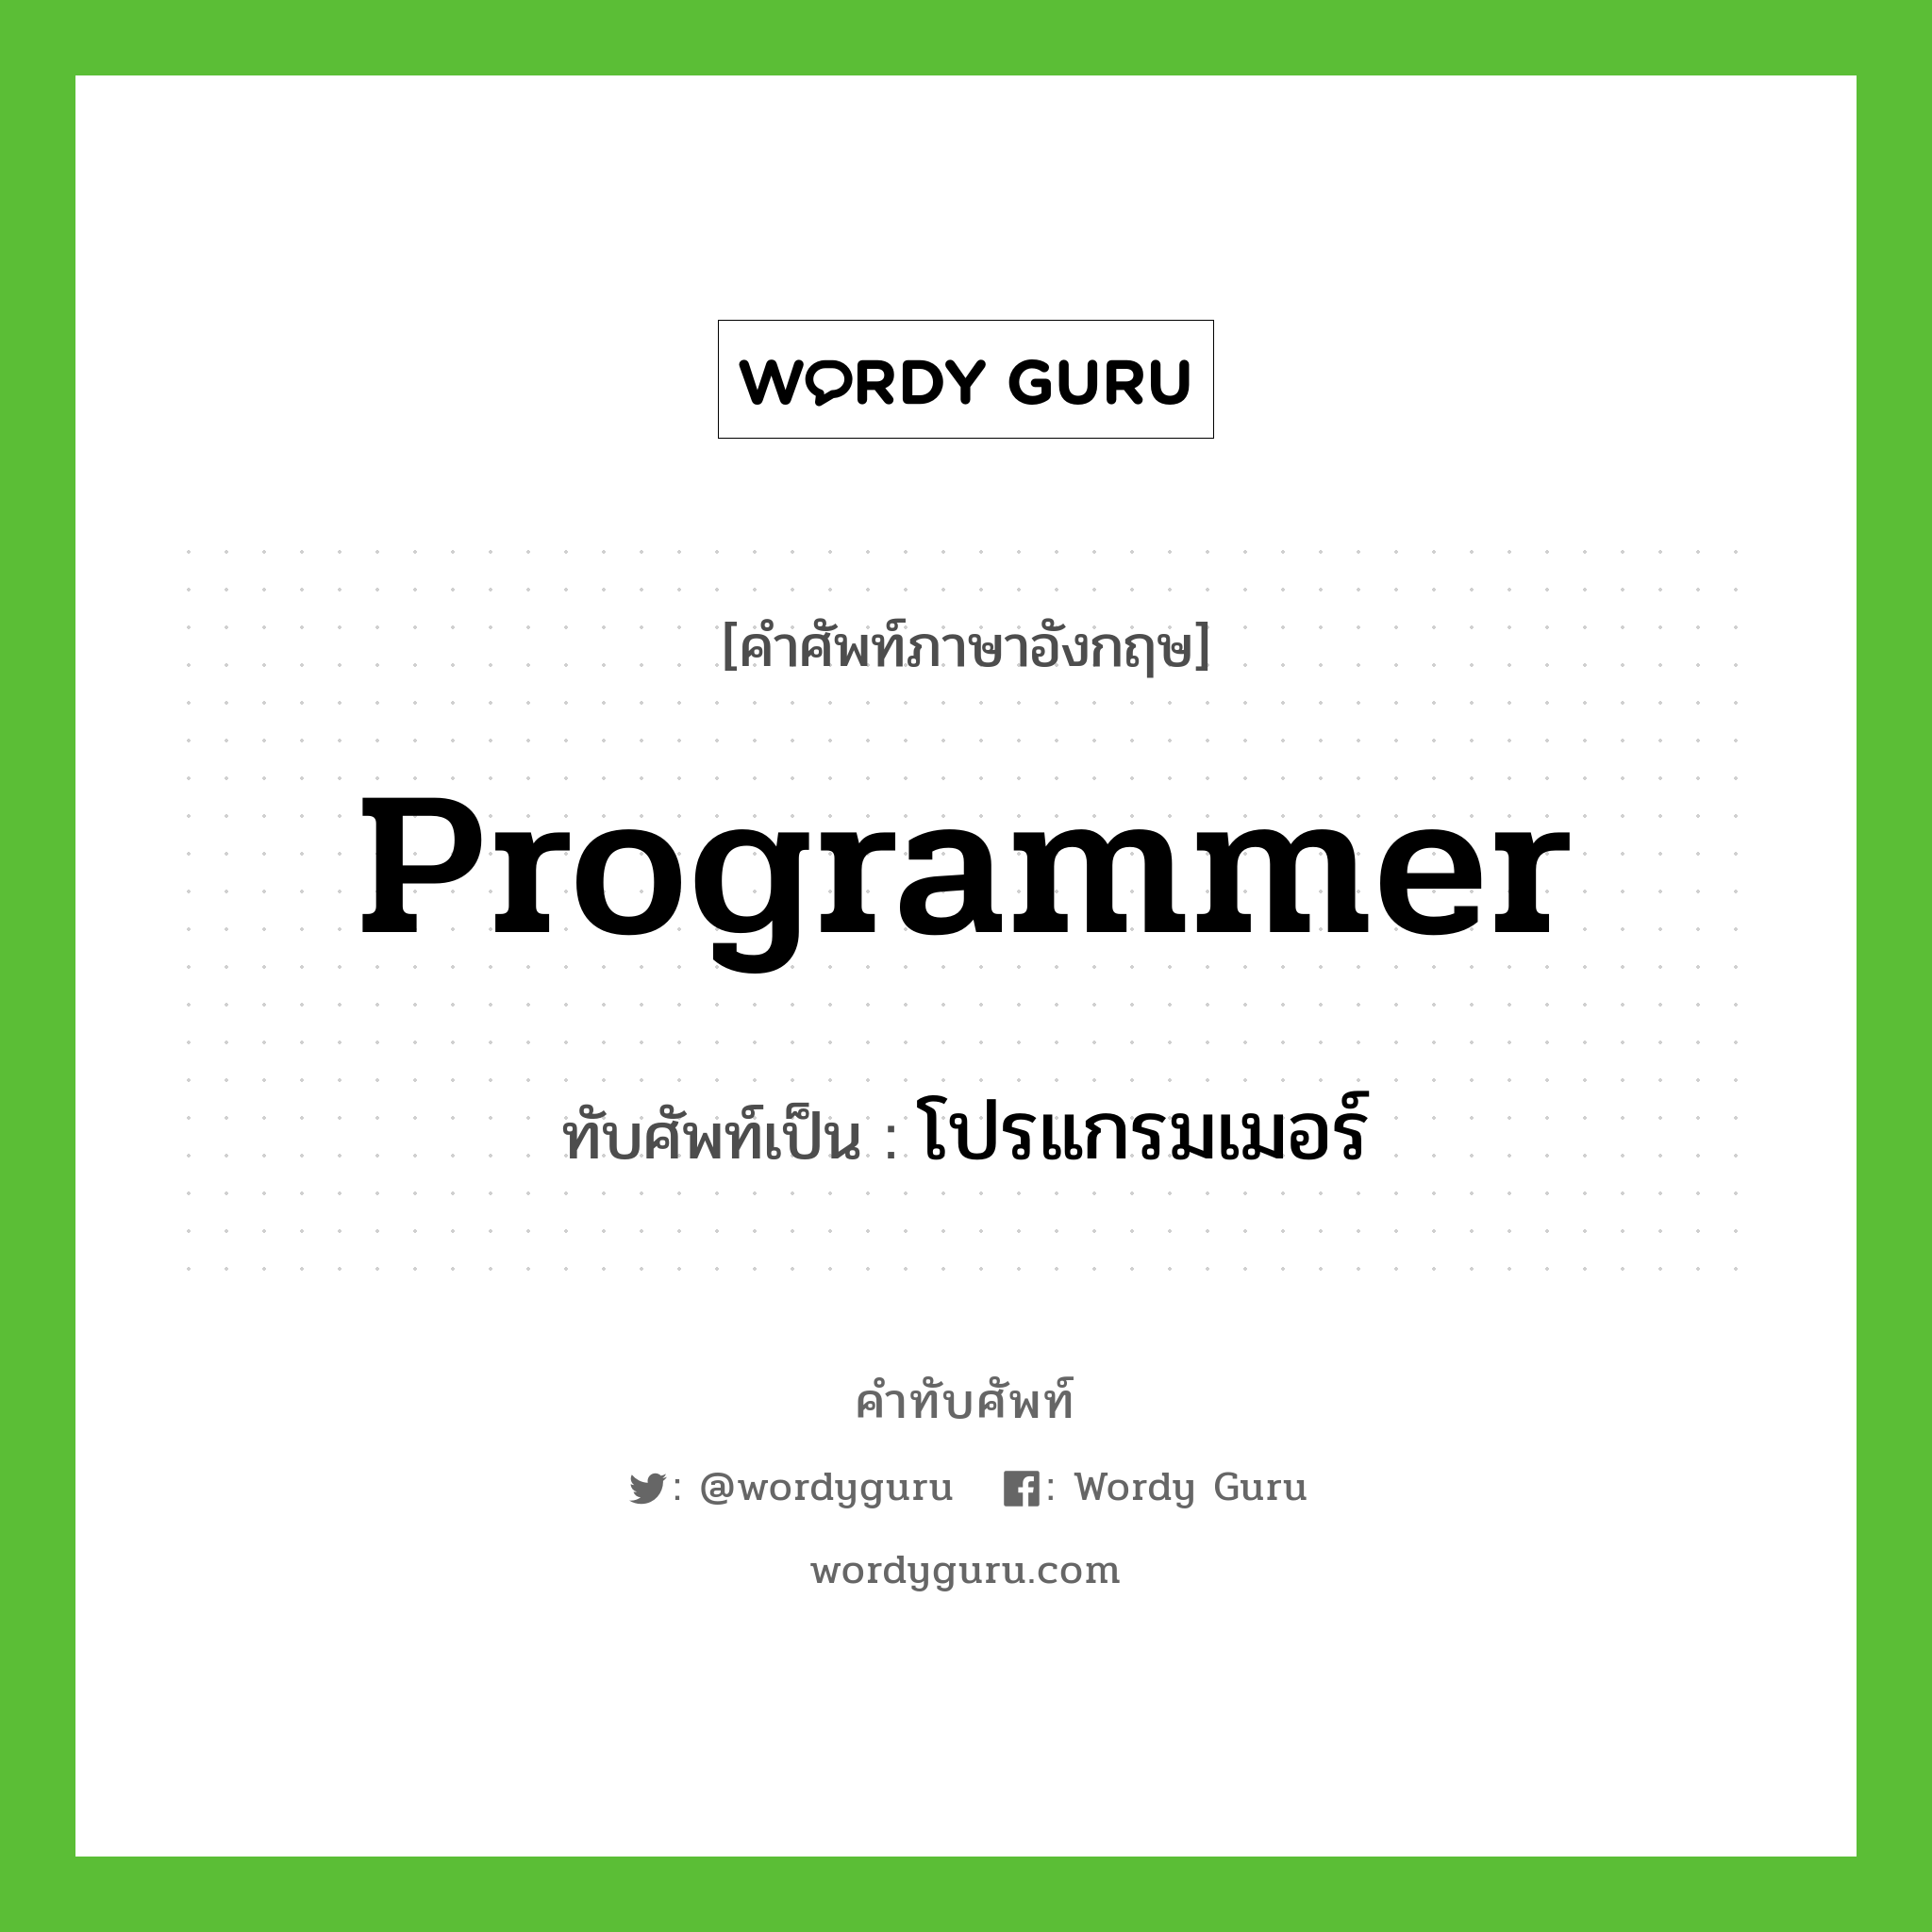 โปรแกรมเมอร์ เขียนอย่างไร?, คำศัพท์ภาษาอังกฤษ โปรแกรมเมอร์ ทับศัพท์เป็น programmer